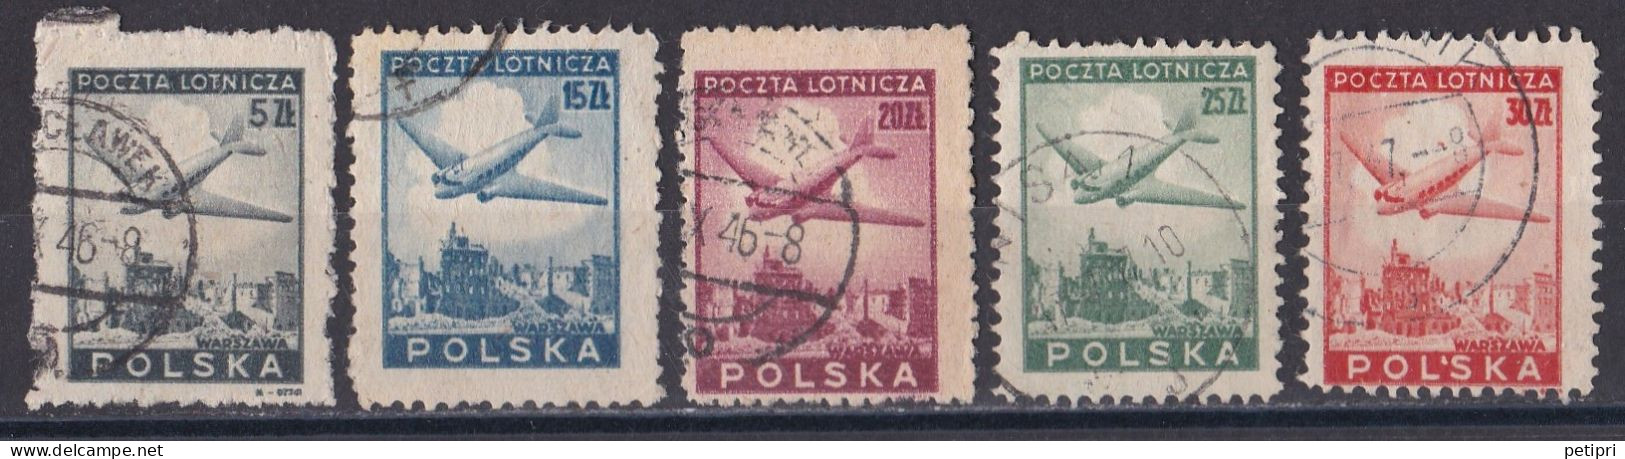 Pologne -  Poste Aérienne  Y&T  N ° 10  12  13  14  15  Oblitérés - Usati